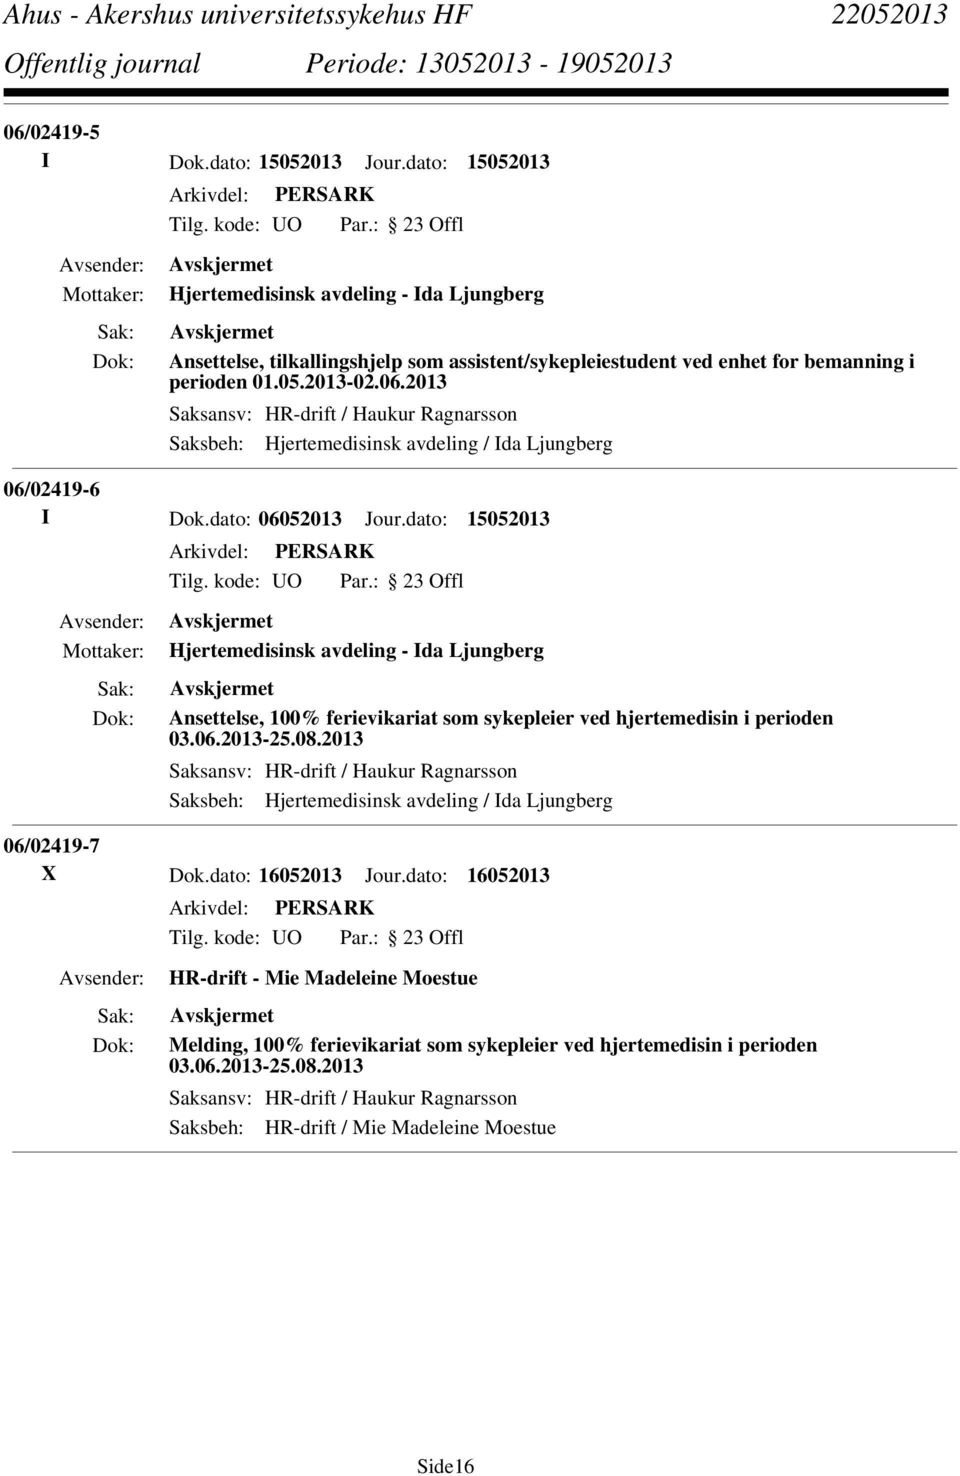 dato: 15052013 Hjertemedisinsk avdeling - Ida Ljungberg Ansettelse, 100% ferievikariat som sykepleier ved hjertemedisin i perioden 03.06.2013-25.08.